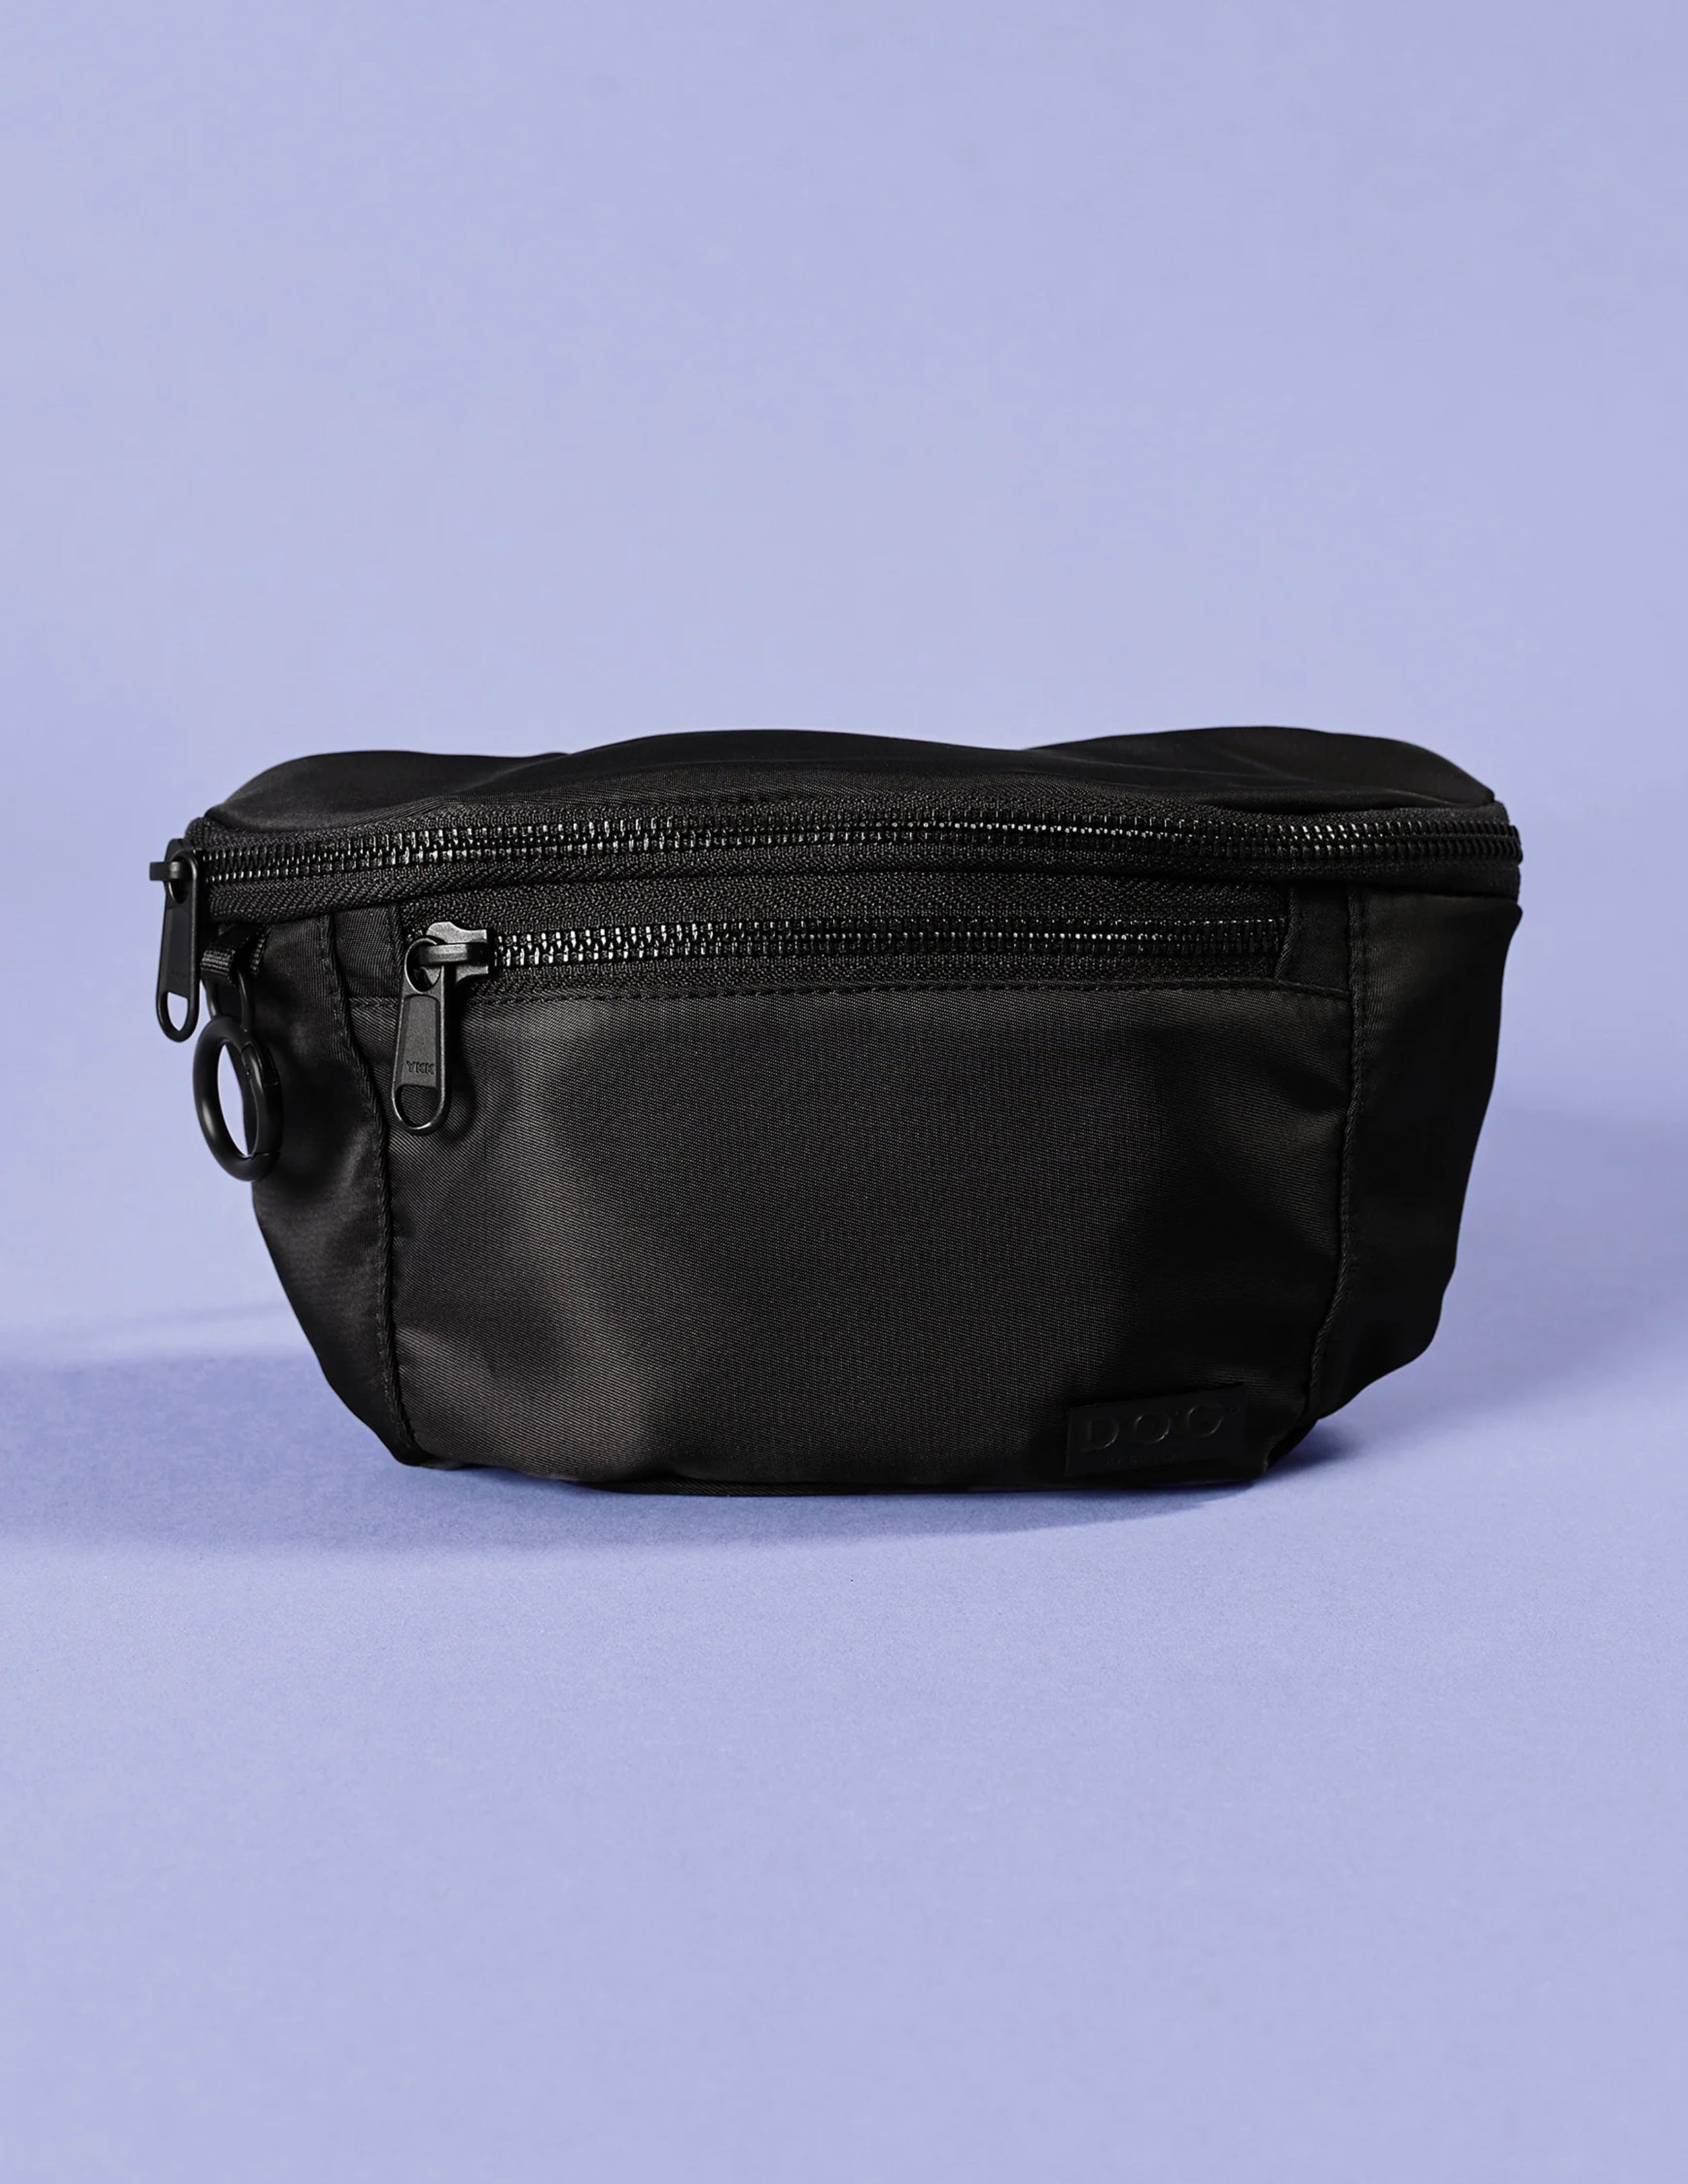 DOG Belt Bag - Black